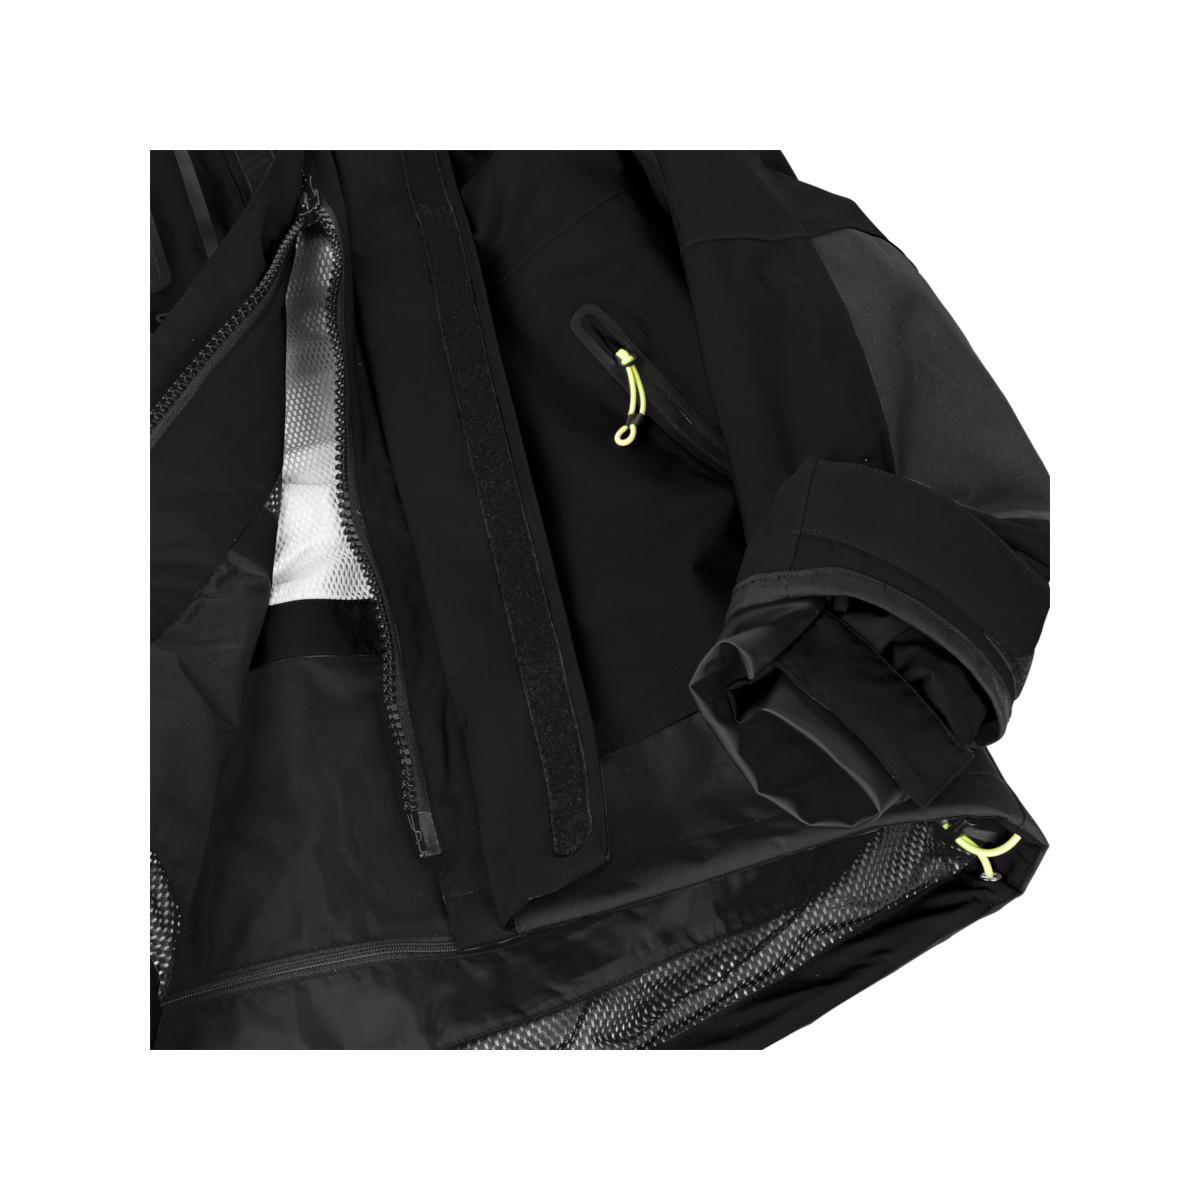 12skipper Magellan veste de quart hauturière, unisexe - noir, taille XS